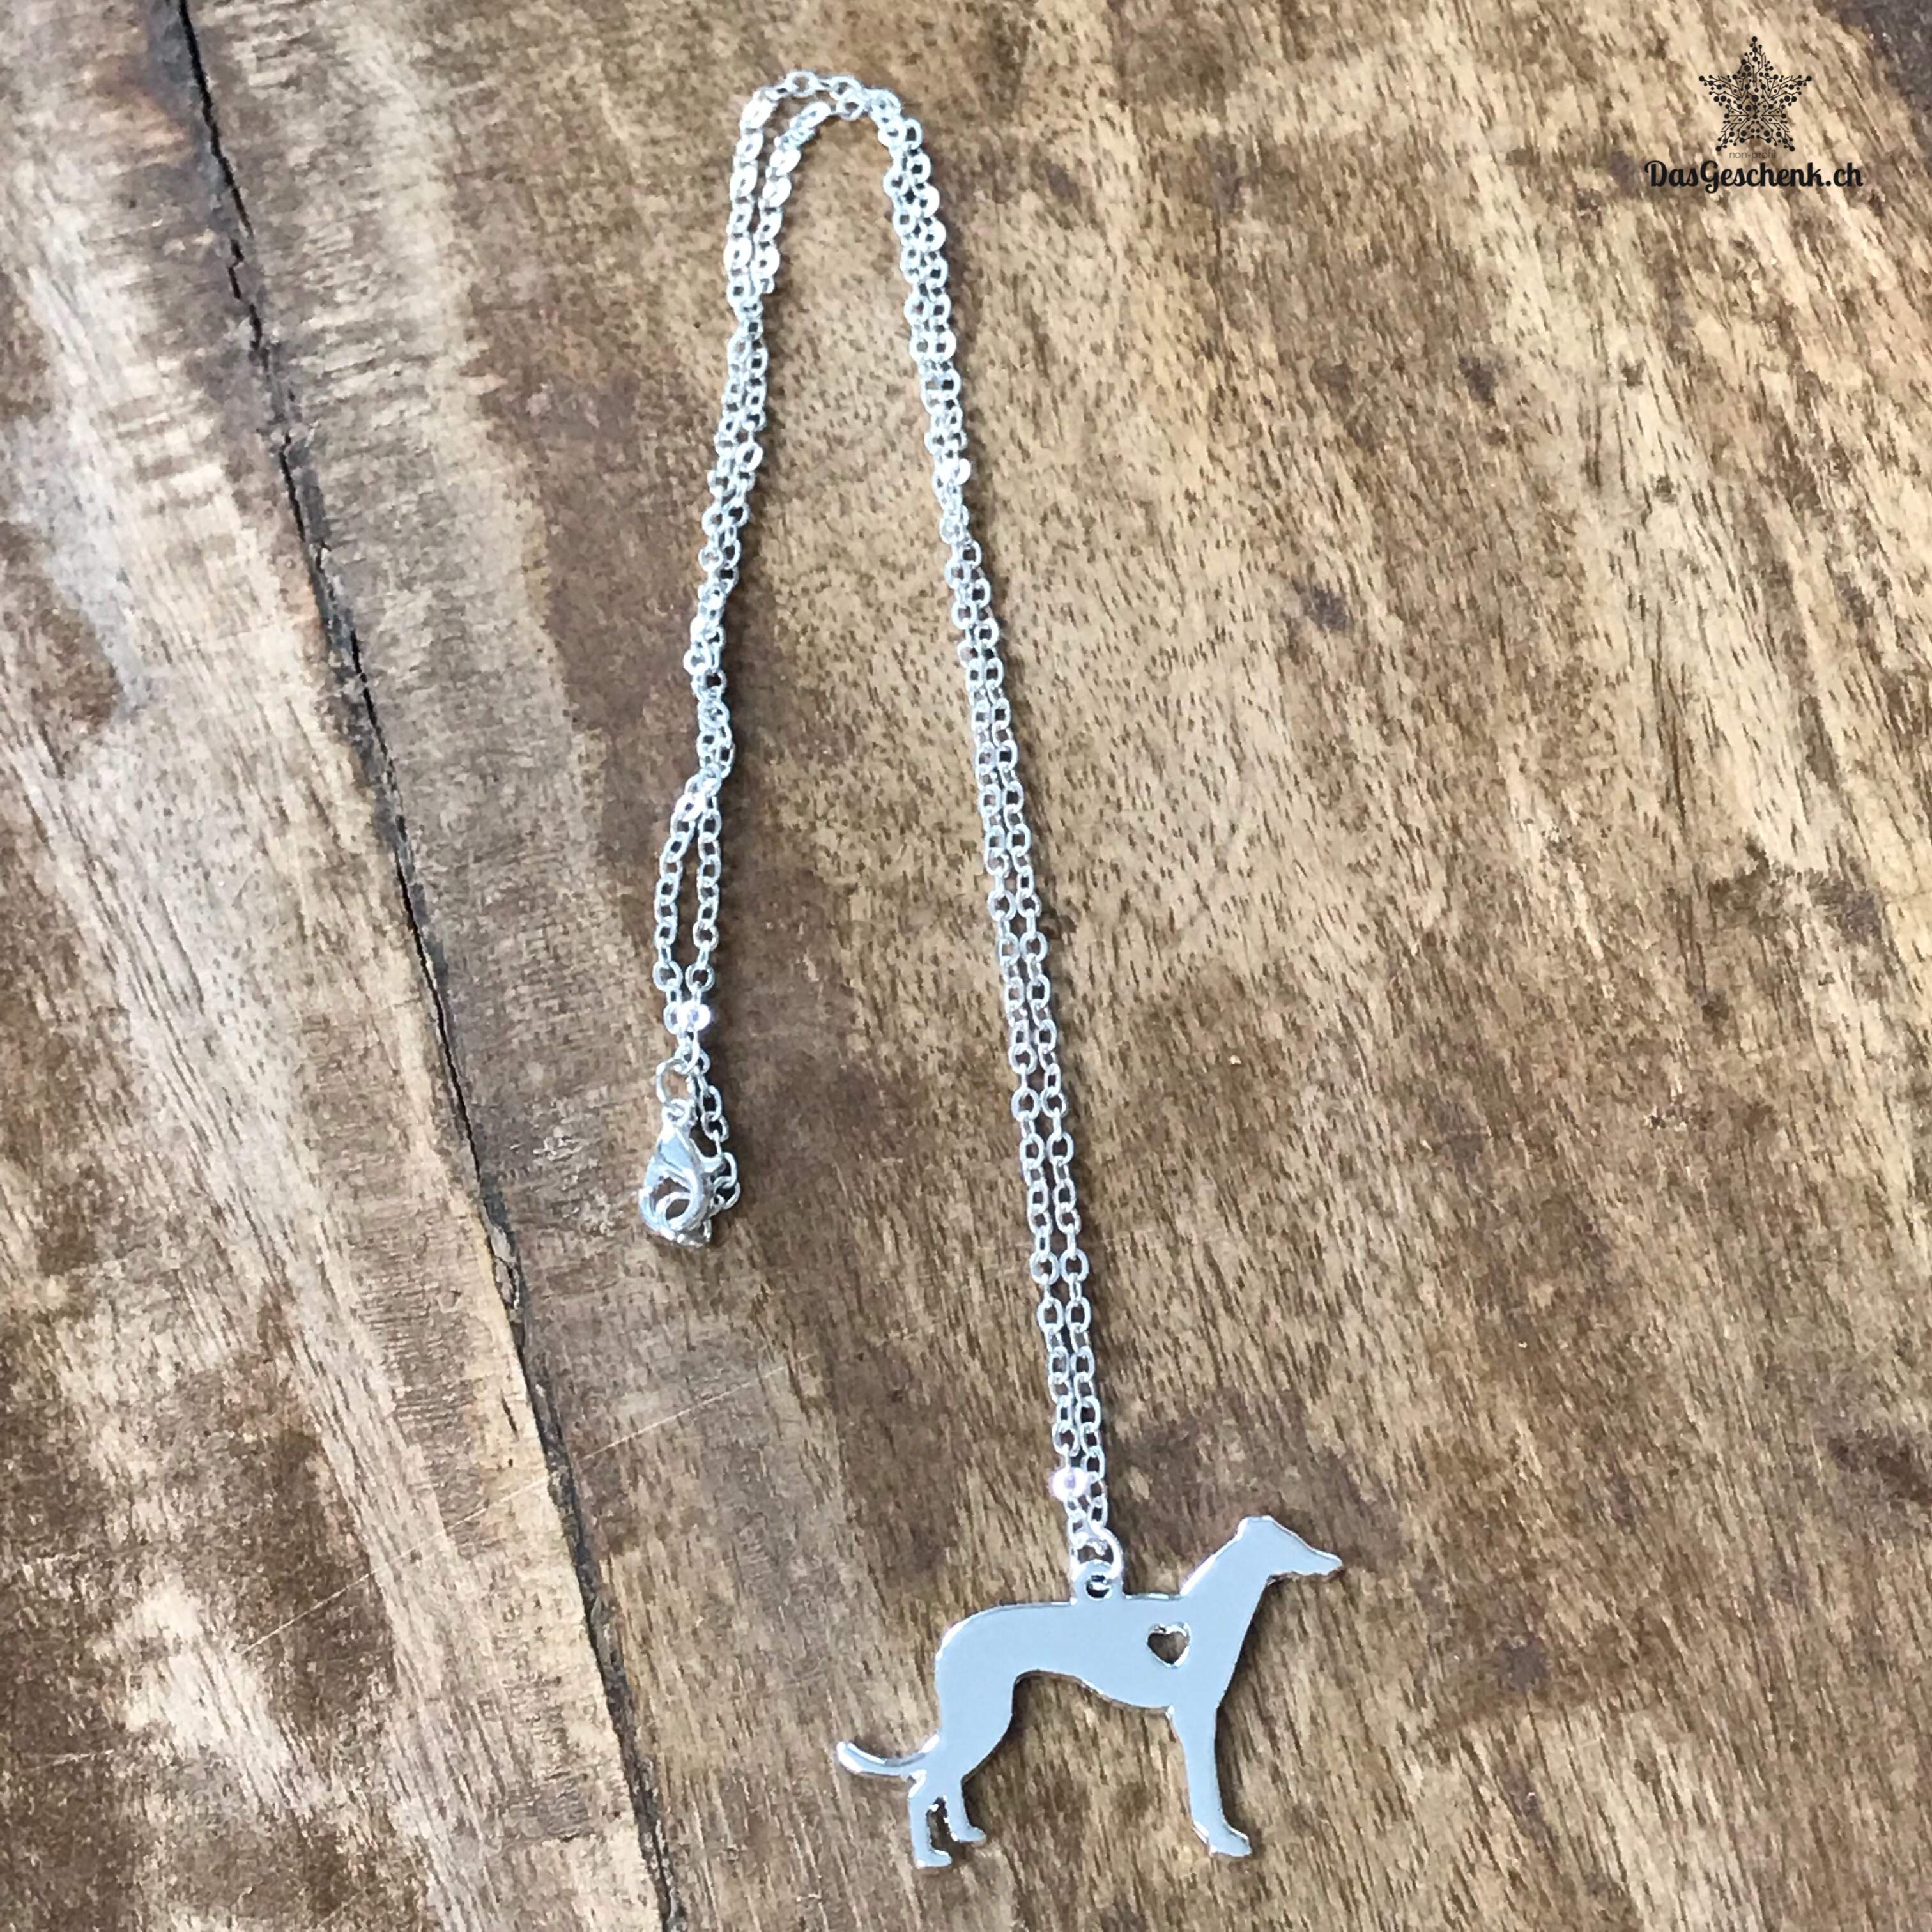 Halskette mit Hundeanhänger in verschiedenen Rassen erhältlich